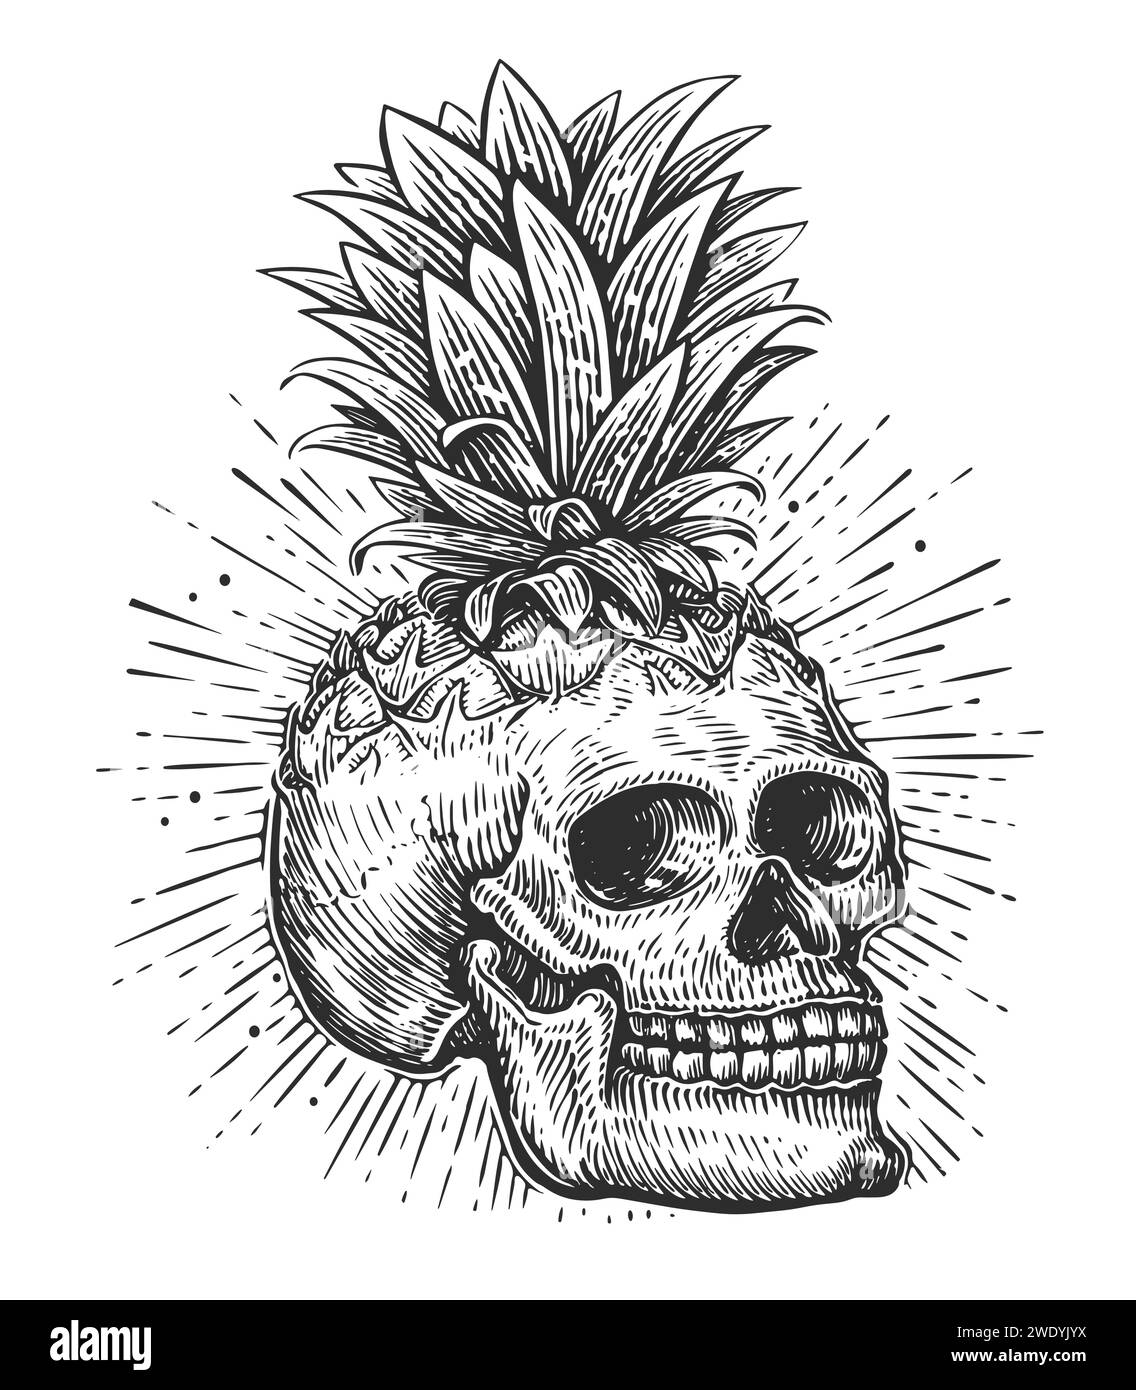 Menschlicher Schädel und Blätter. Handgezeichneter Skelettkopf im Vintage-Gravurstil. Illustration des Skizzenvektors Stock Vektor